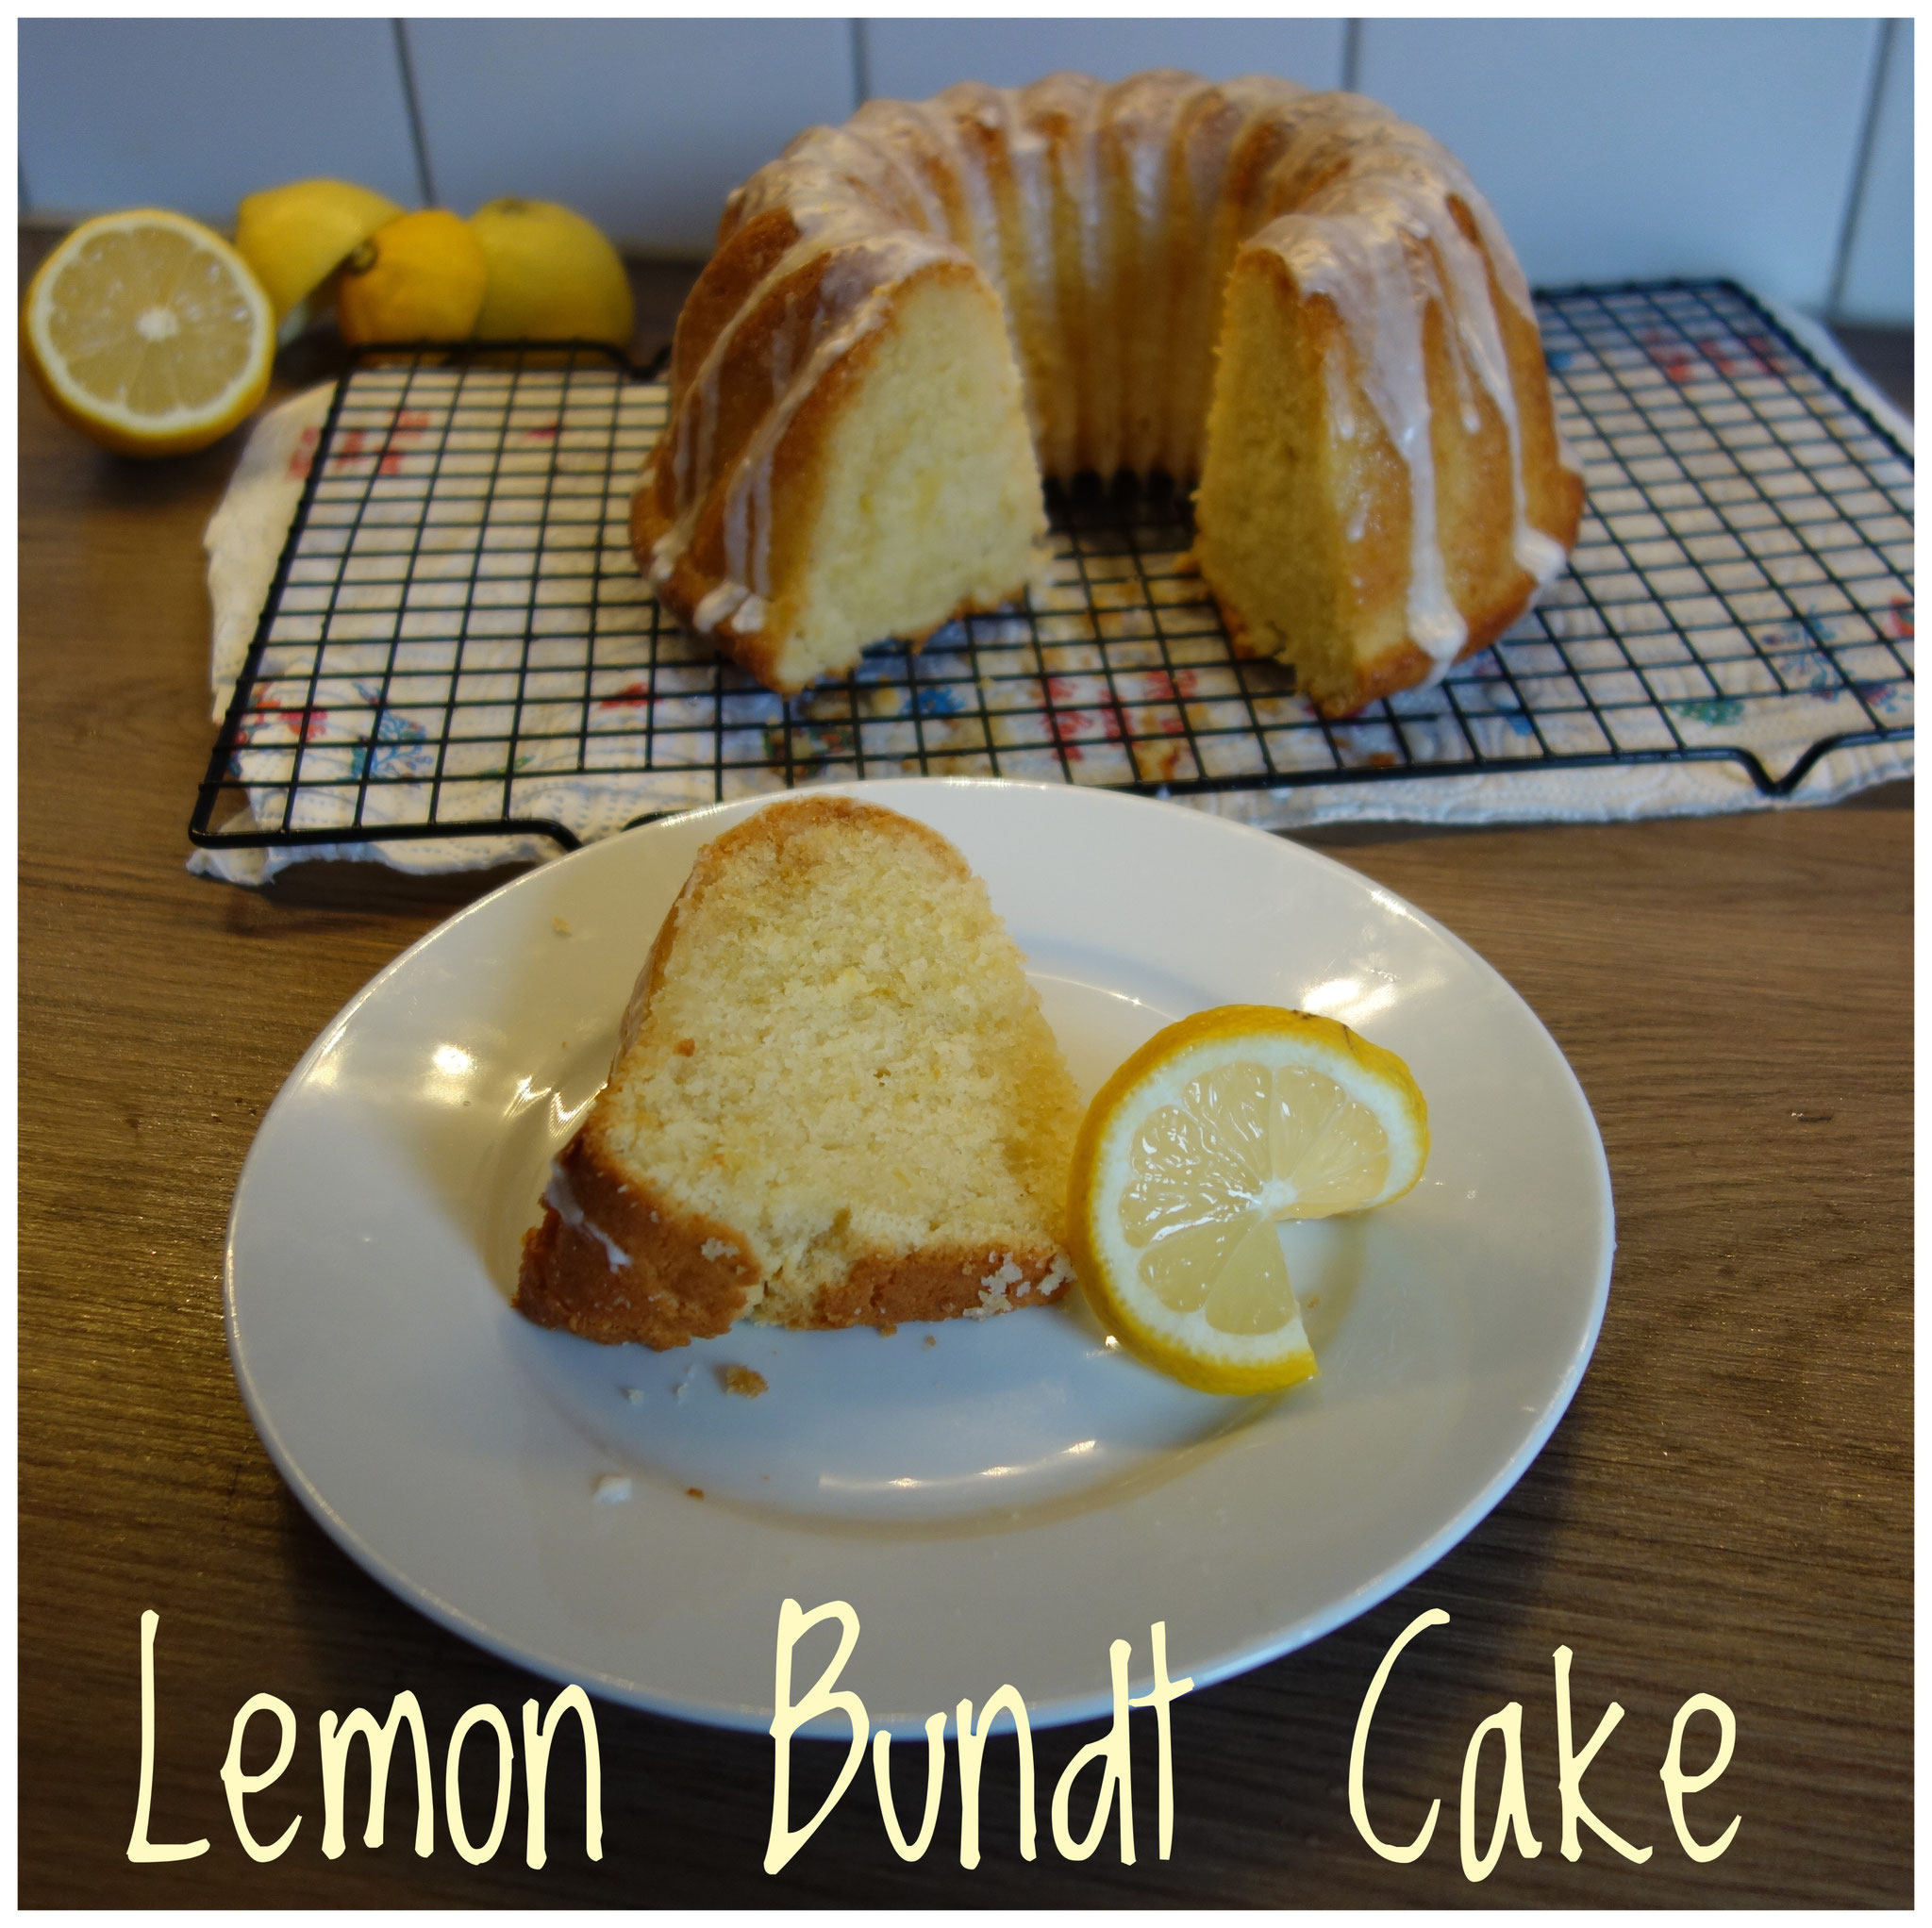 amerikanischer Zitronen Gugelhupf / Lemon Bundt Cake